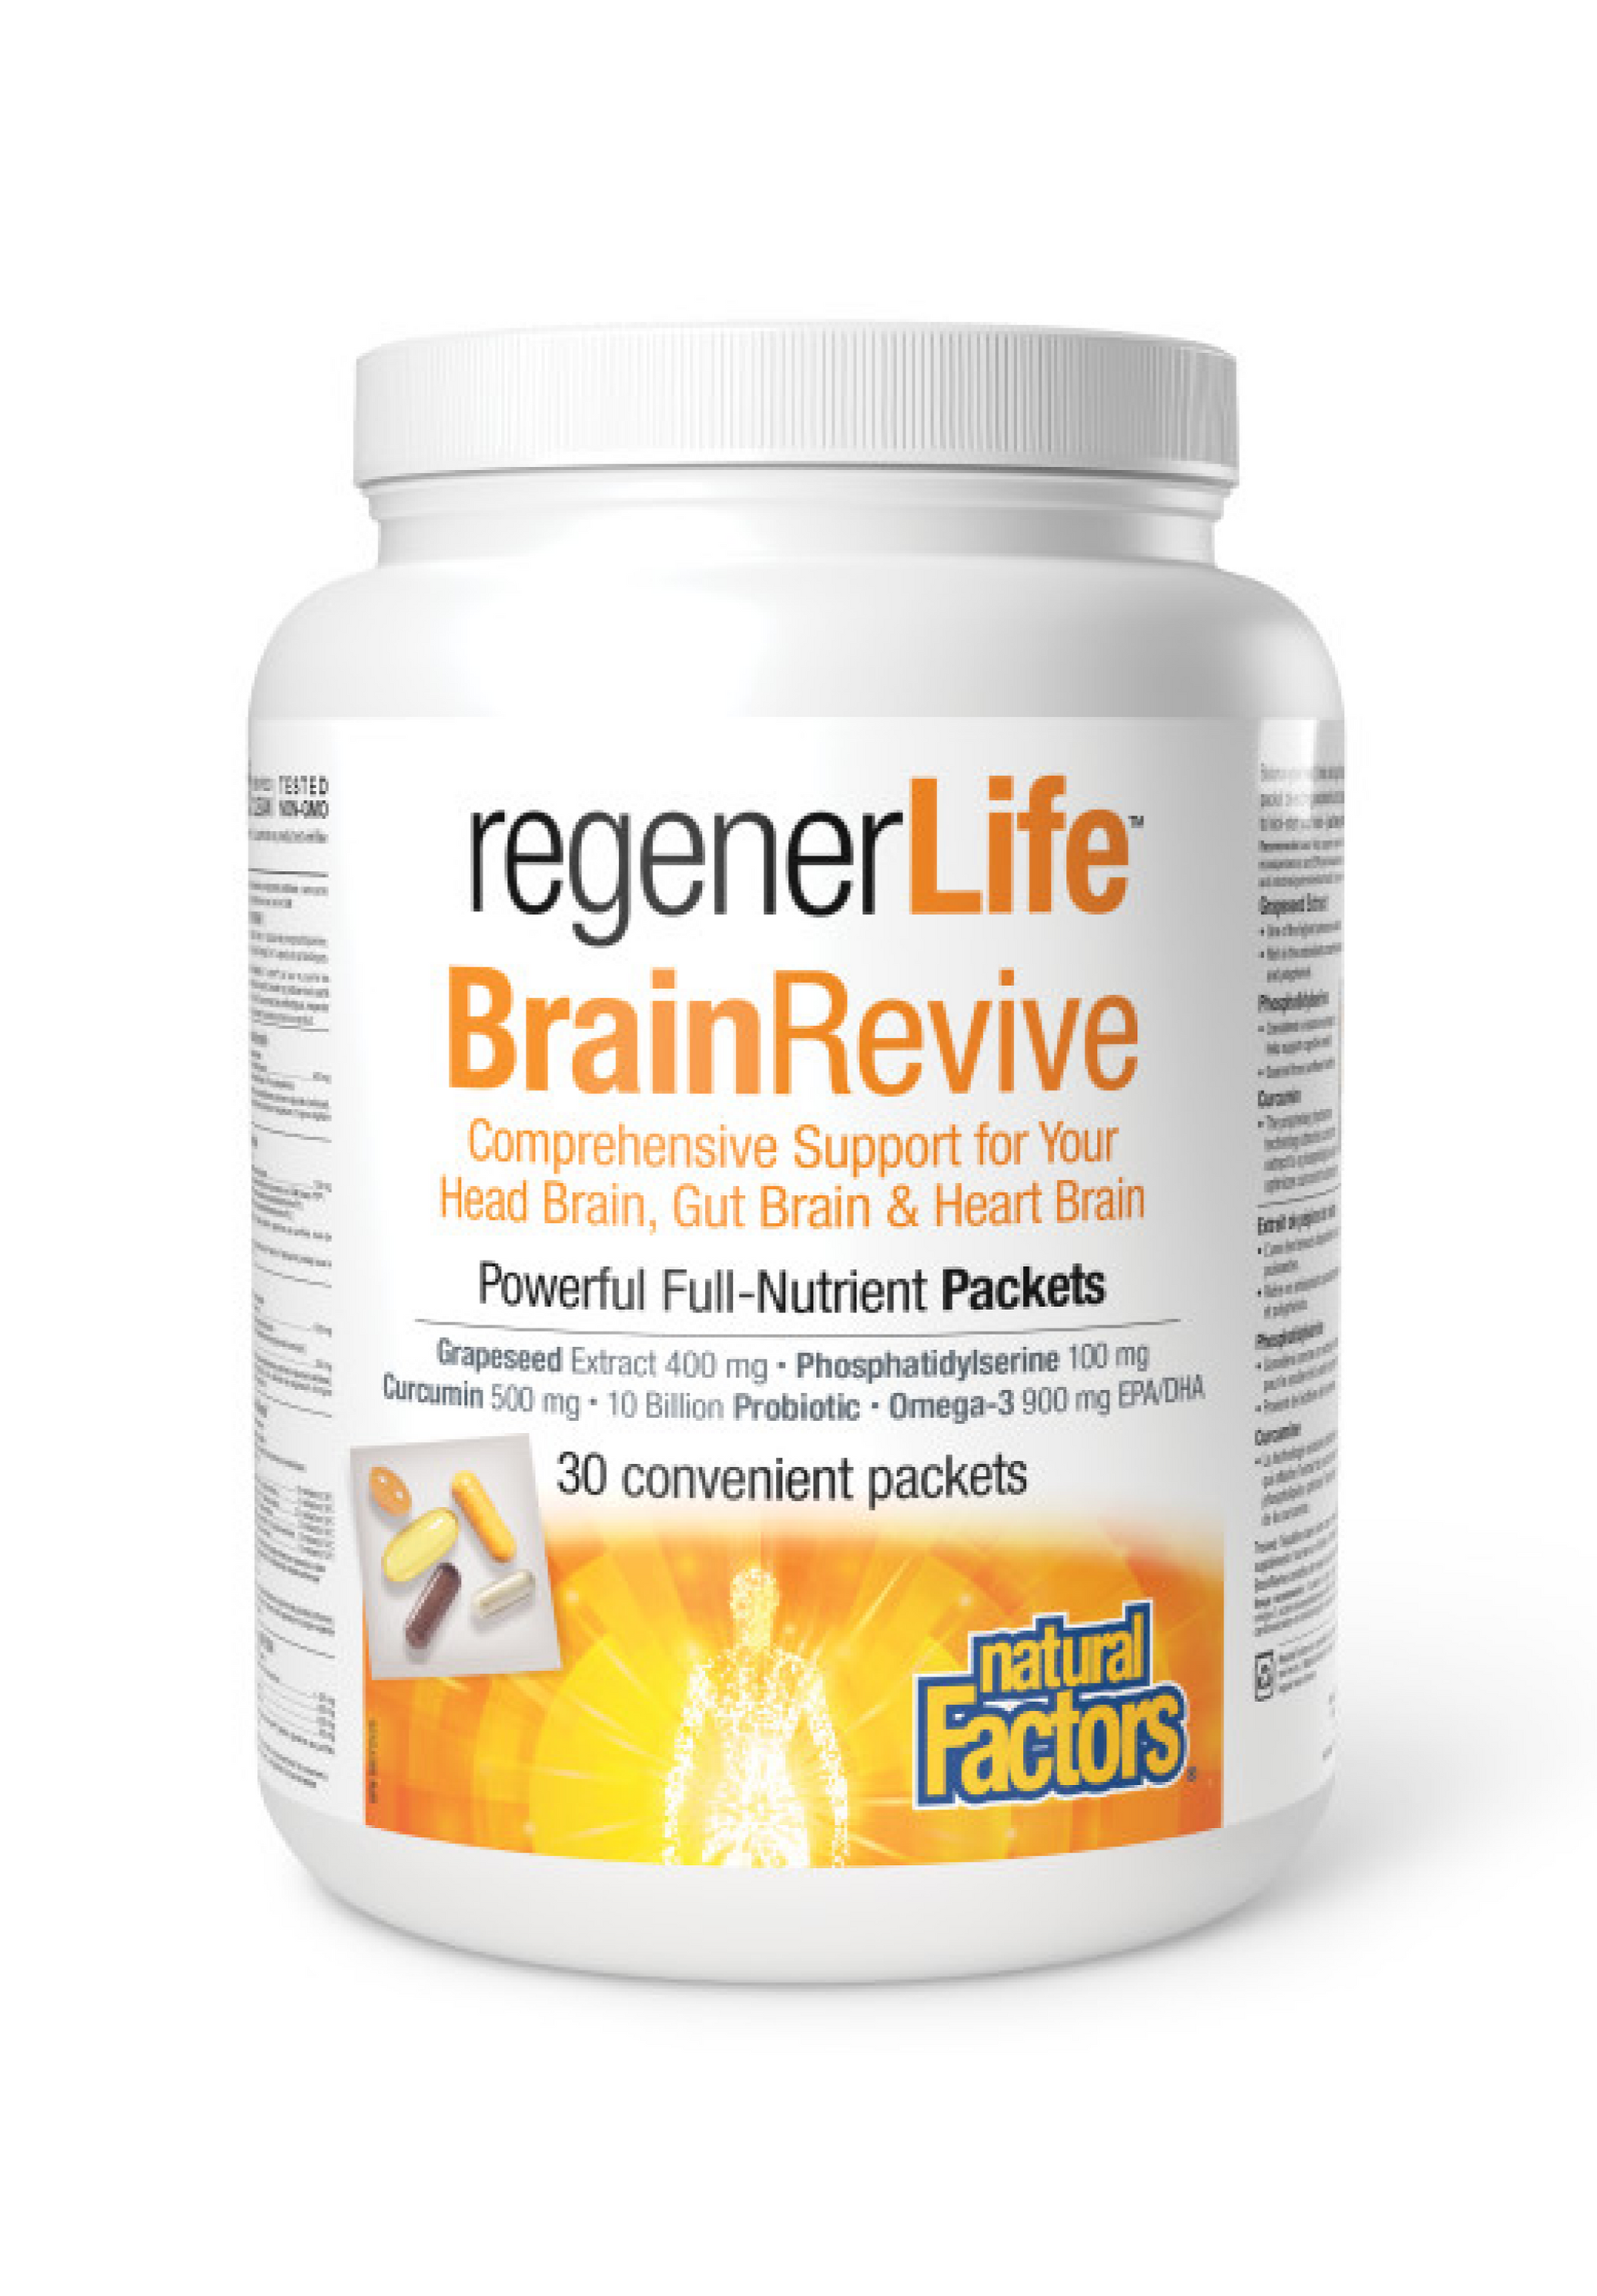 Natural Factors regenerLife Brain Revival Kit 30pk